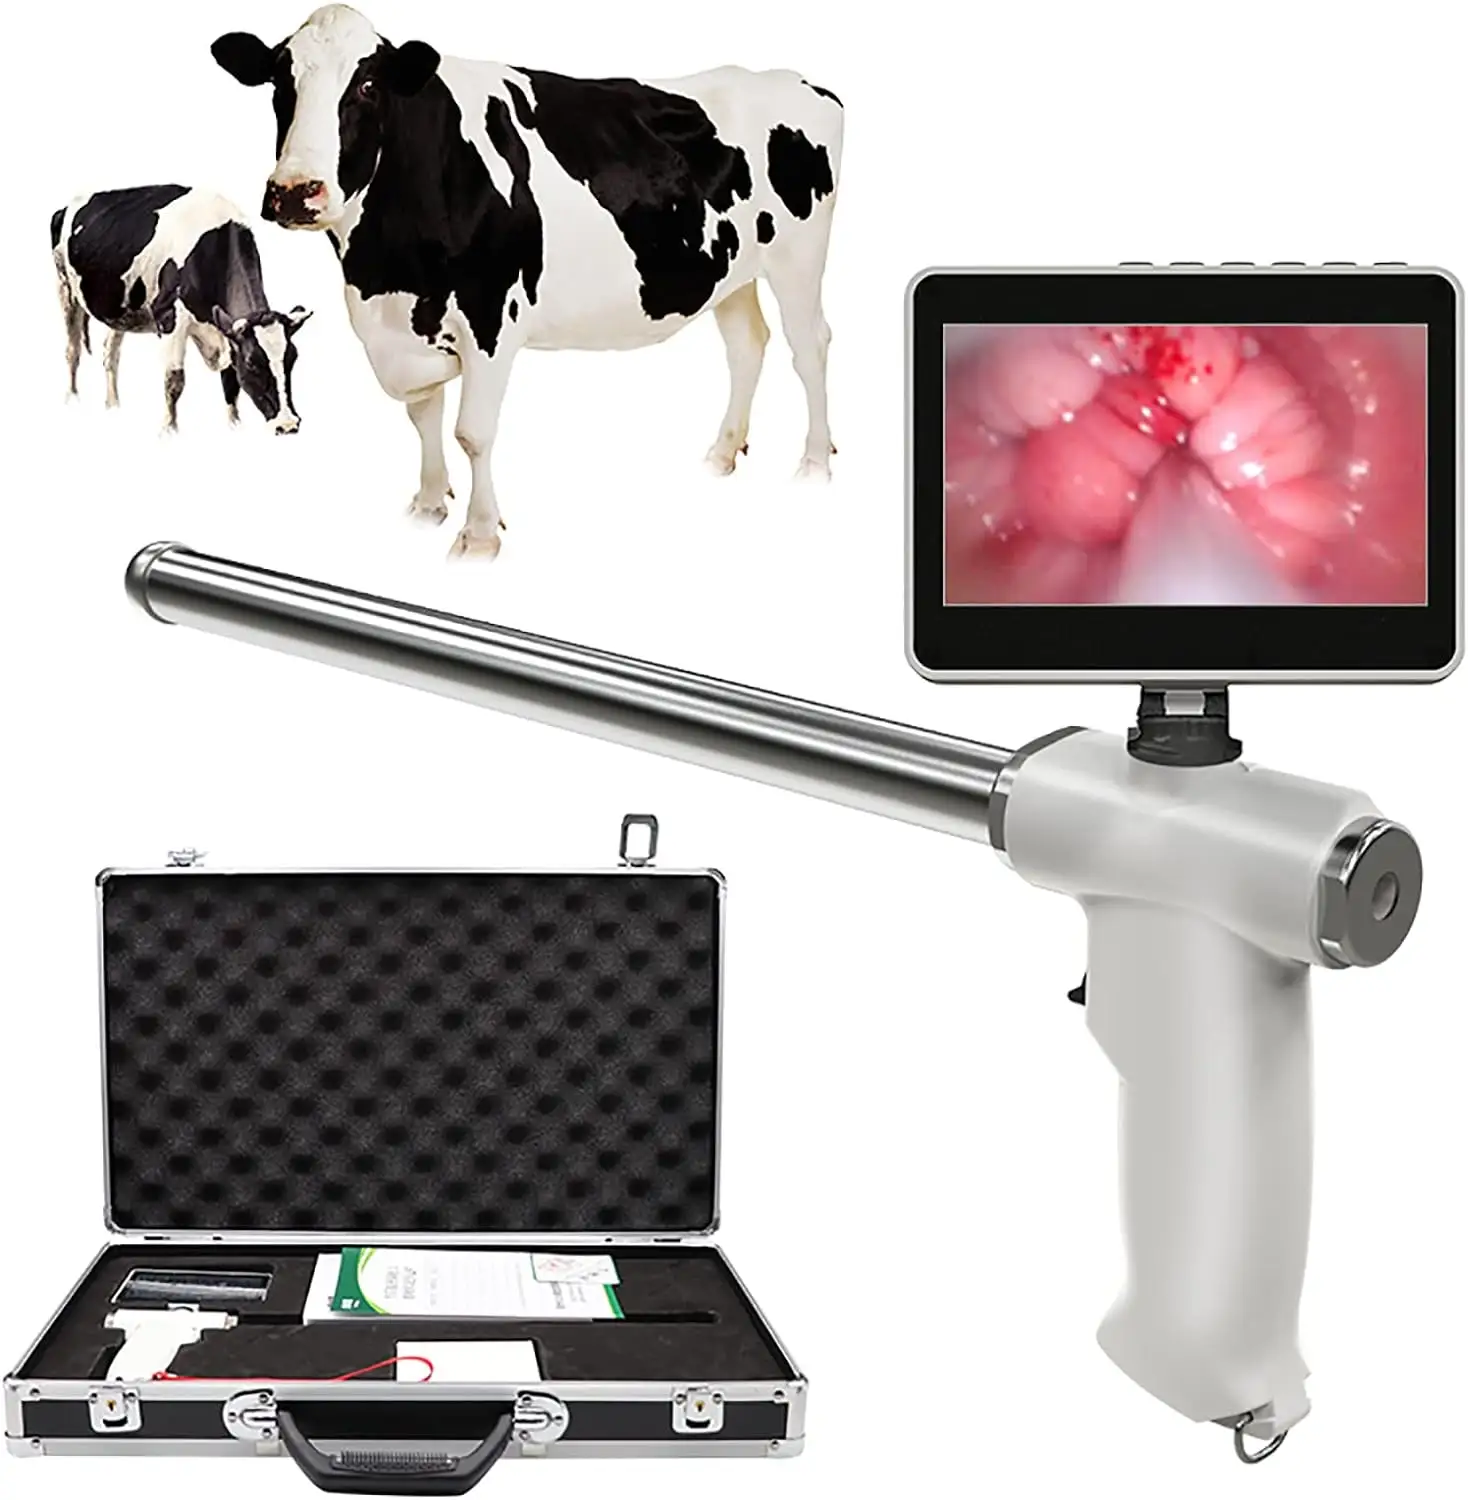 Pistola per inseminazione artificiale visiva per bovini di mucca/pistola digitale AI per bovini di alta qualità con fotocamera